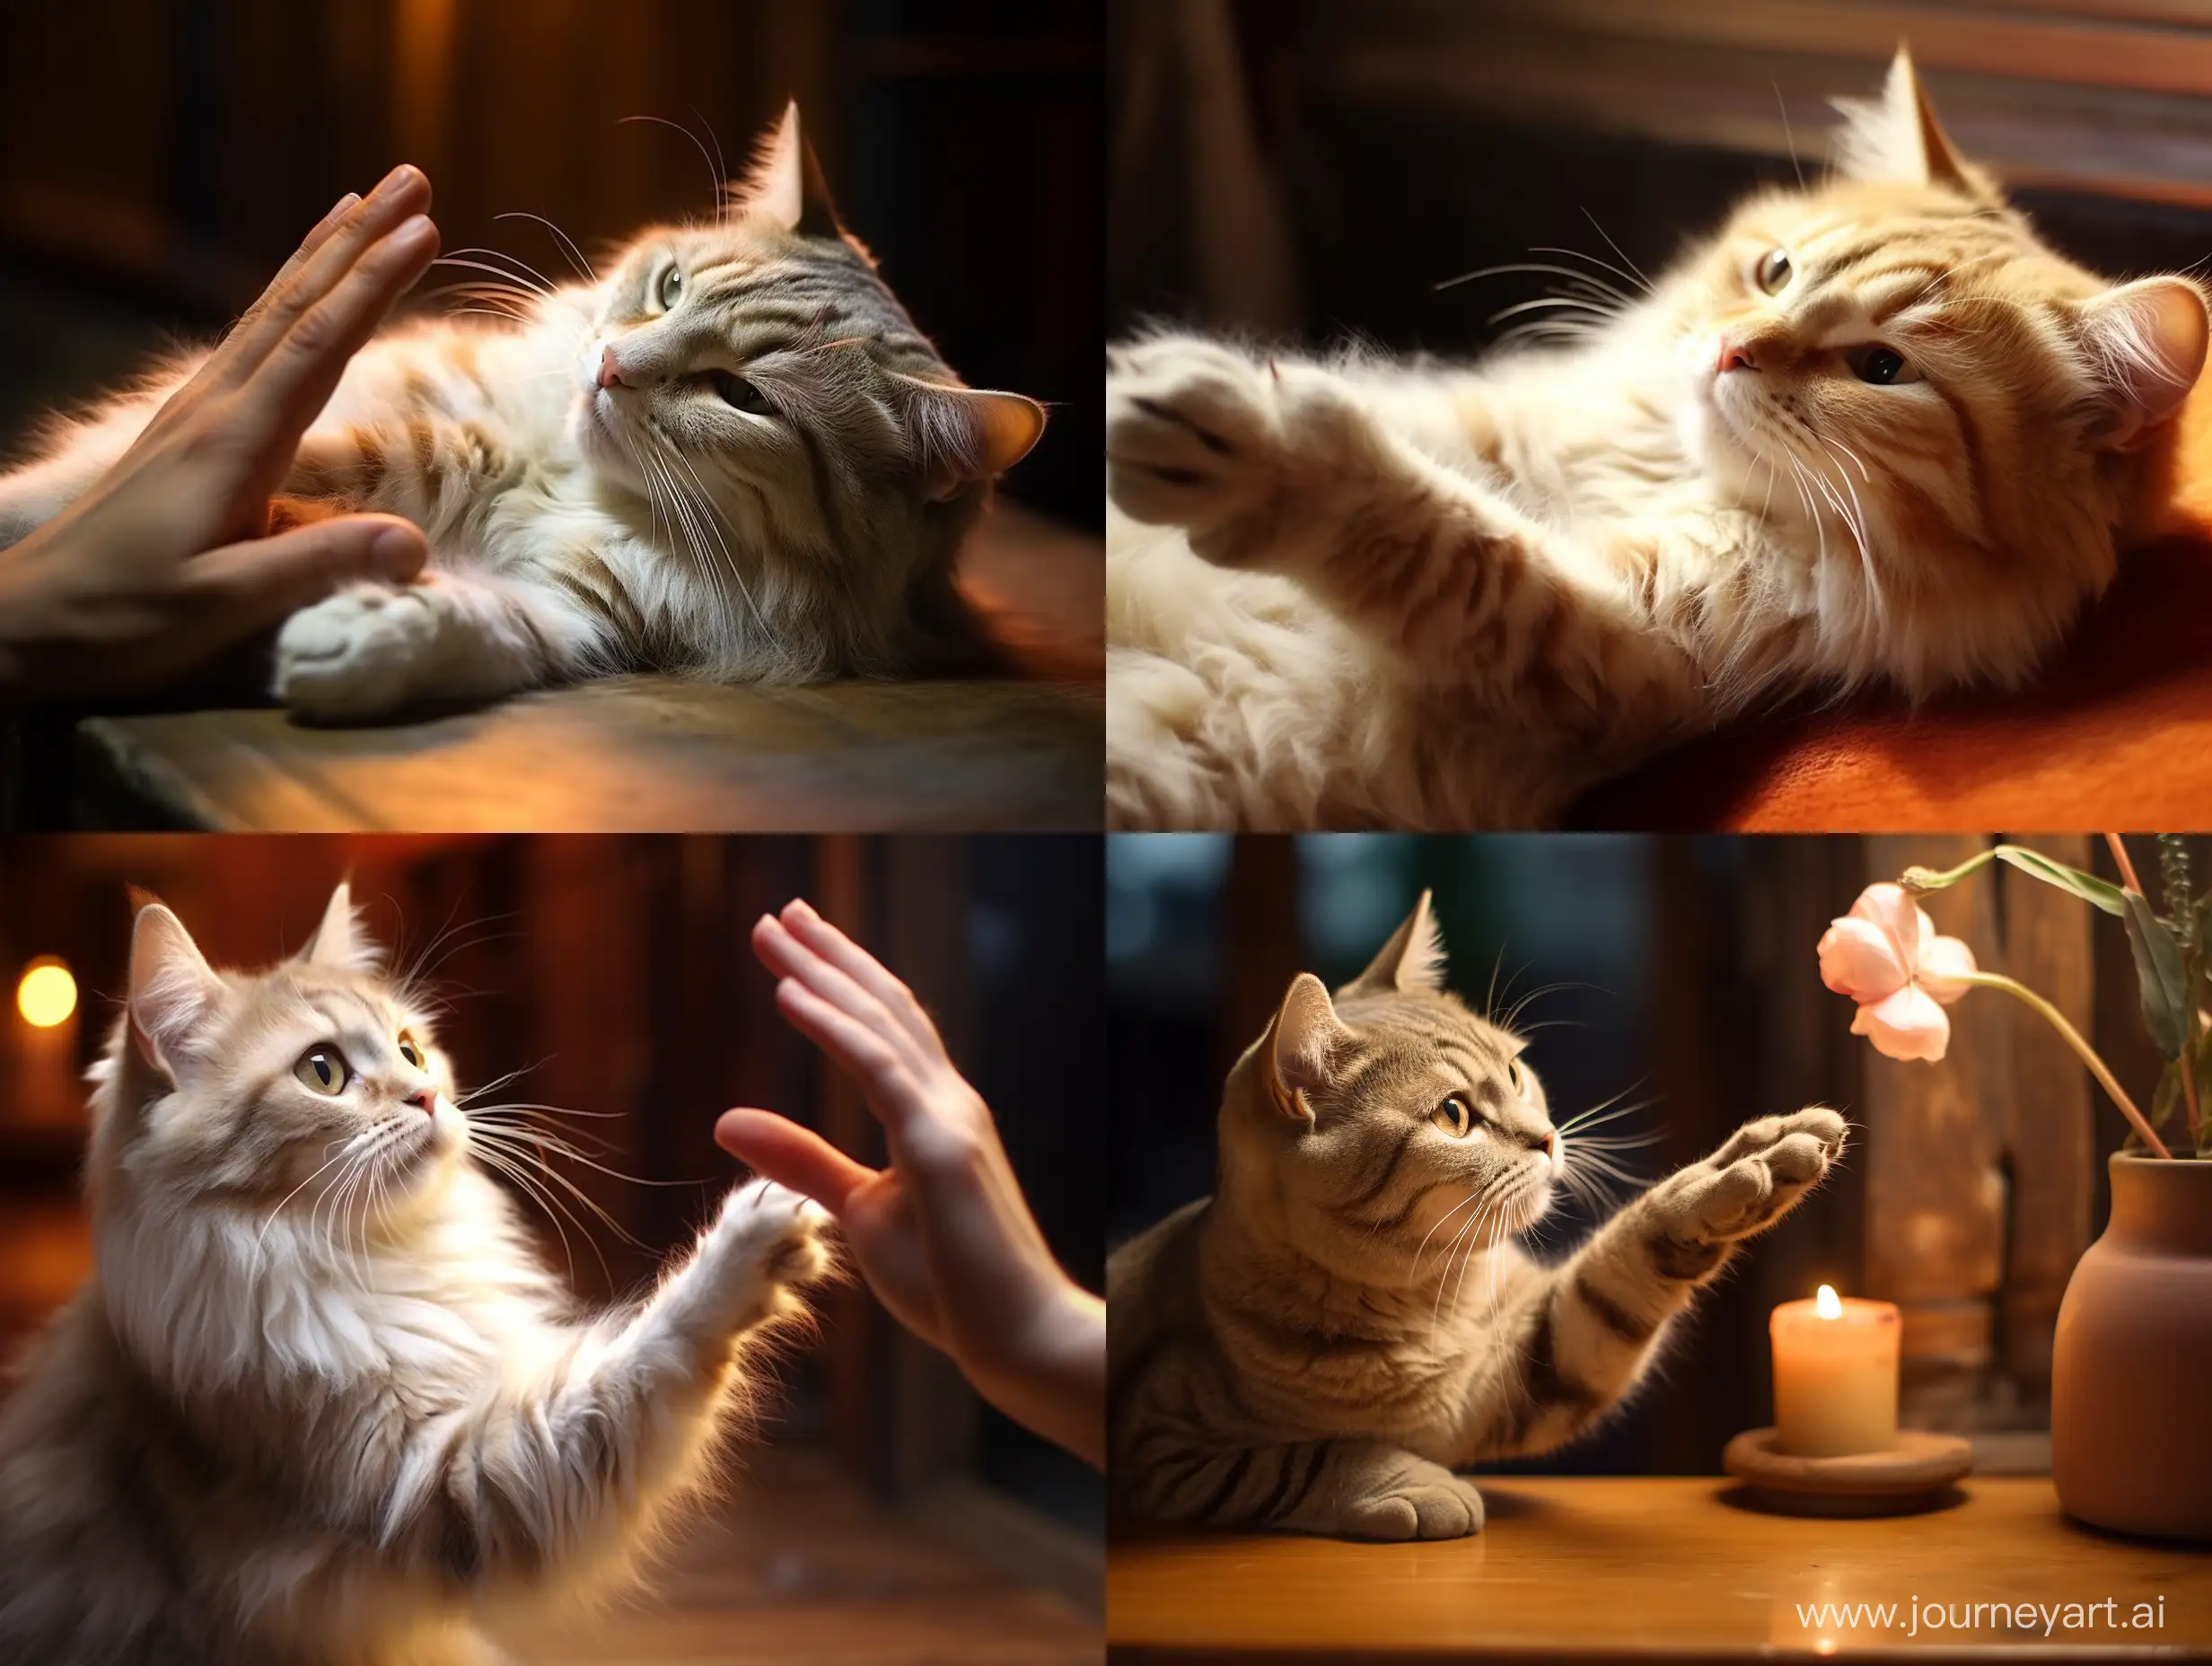 Friendly-Cat-Extending-a-Human-Hand-Gesture